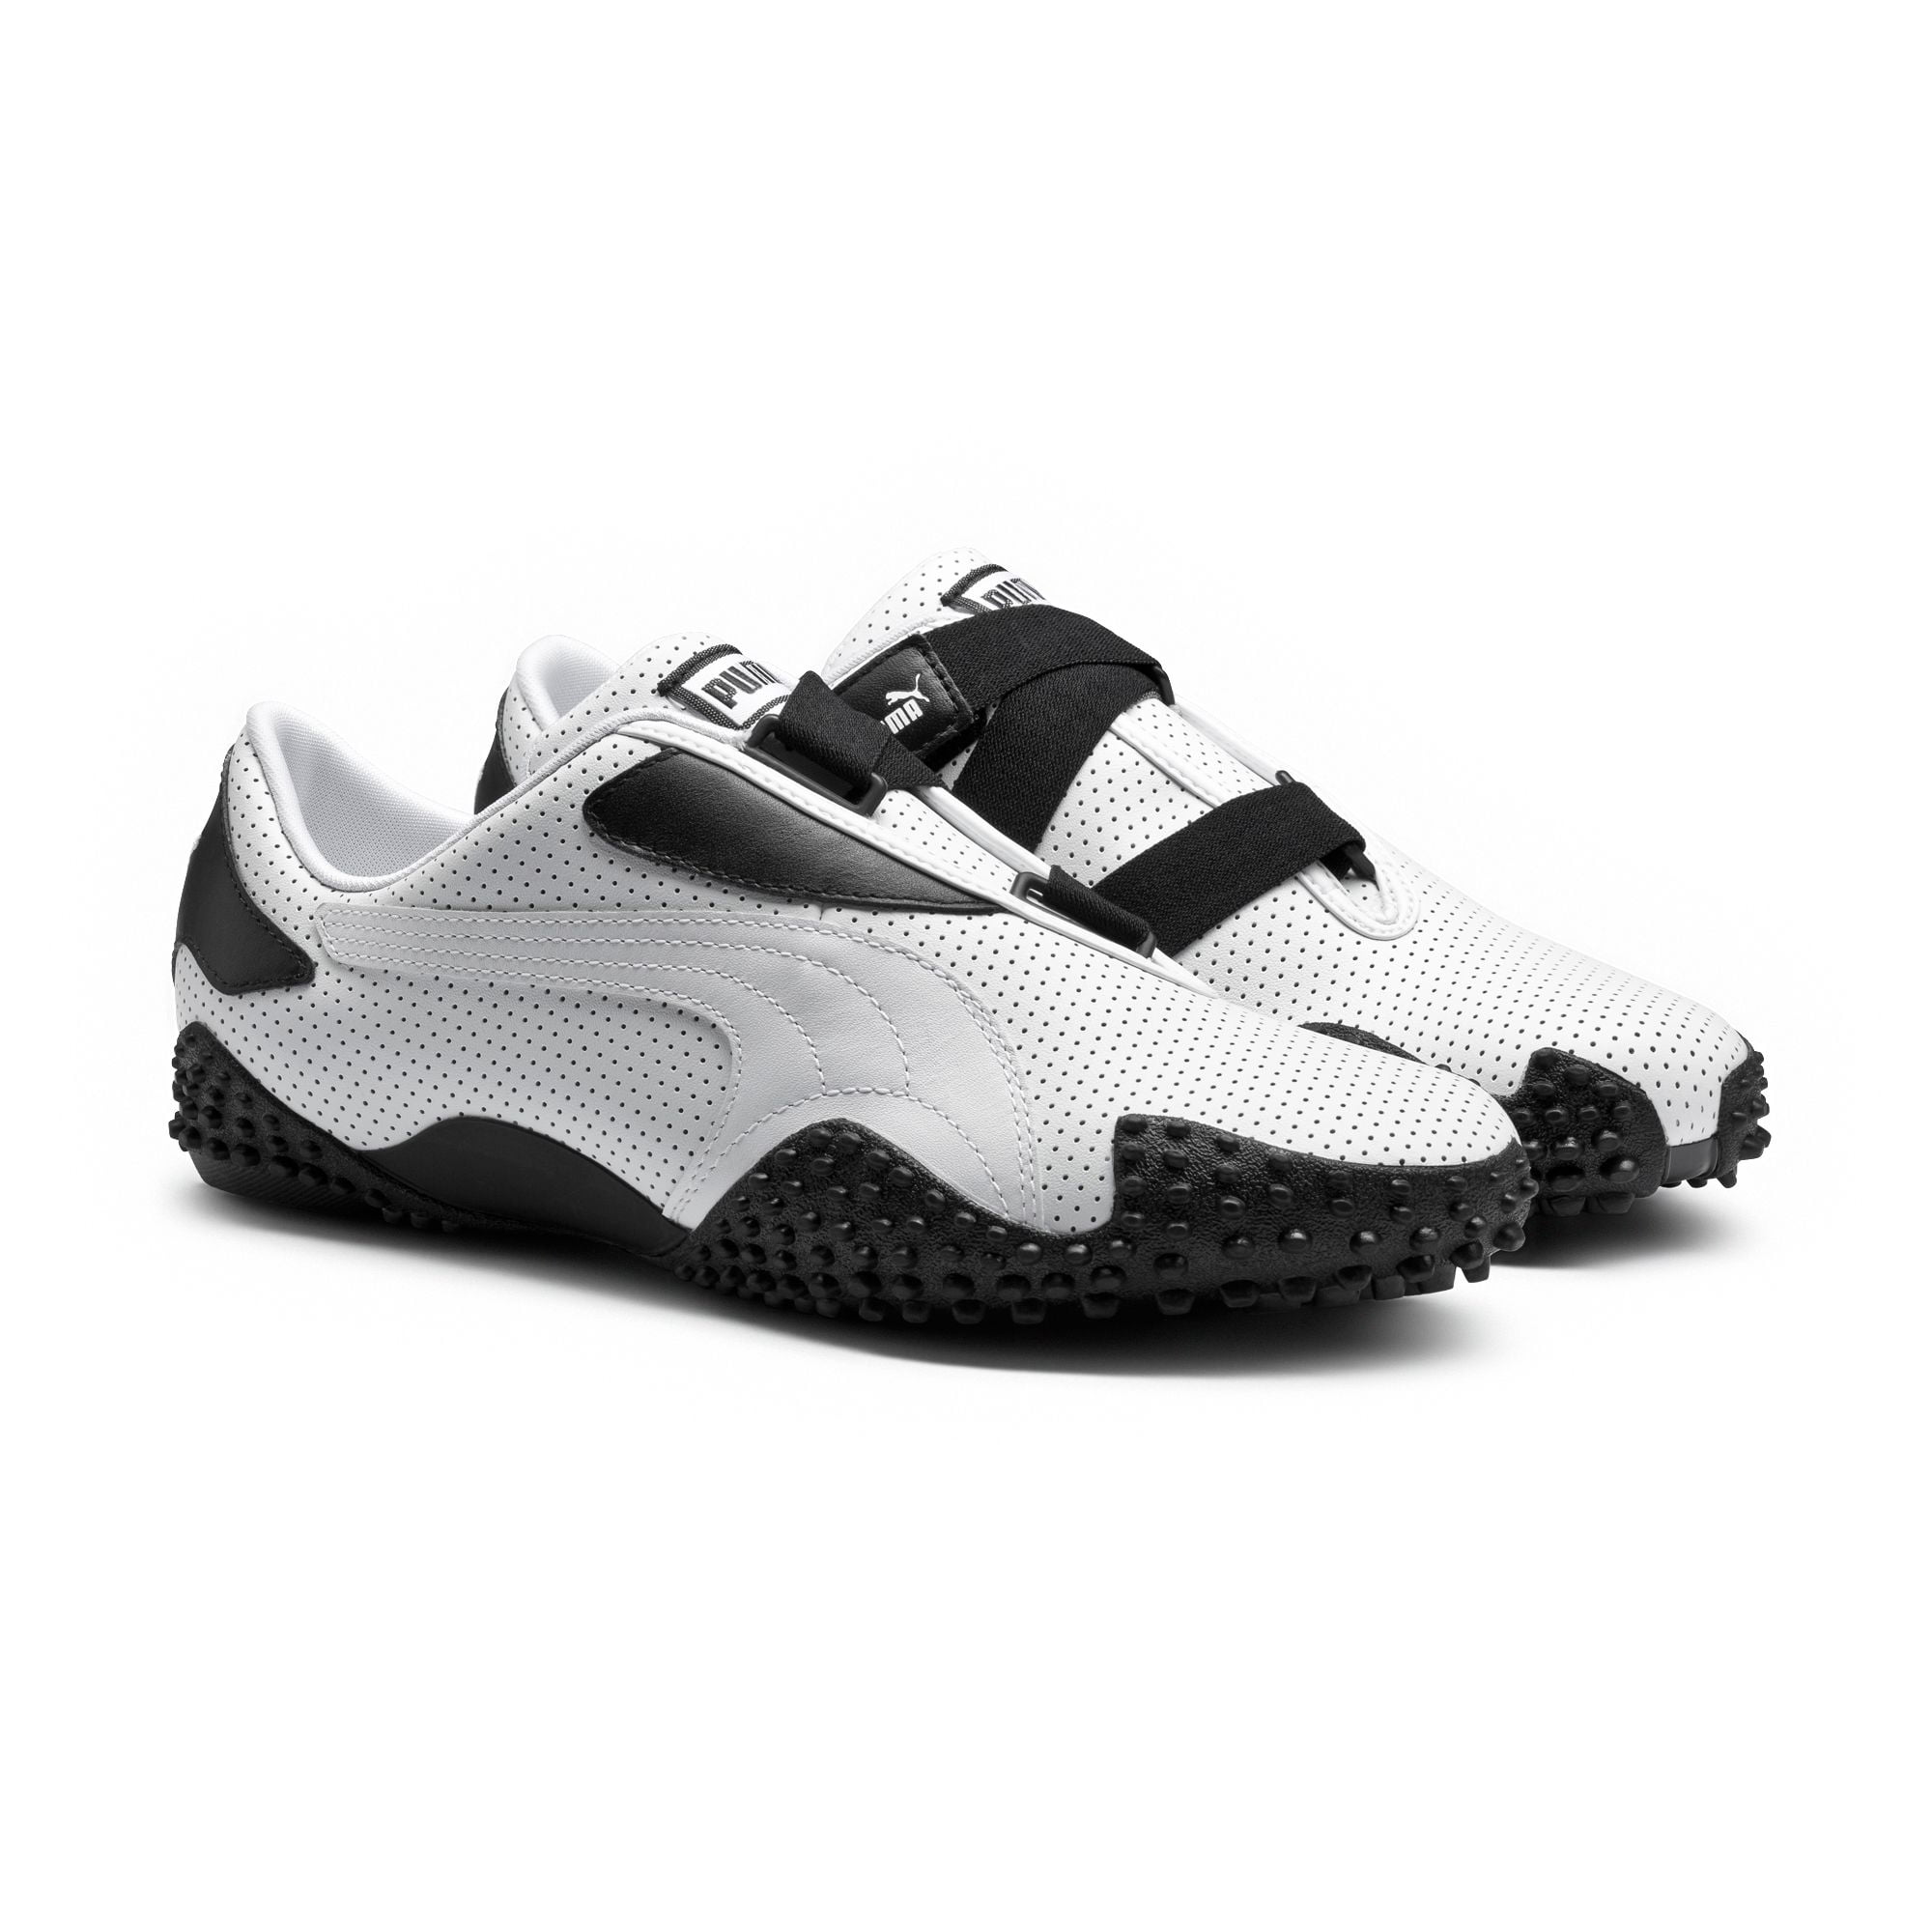 Puma Mens MOSTRO PERF LEATHER Sneakers 351413-01 - Walmart.com